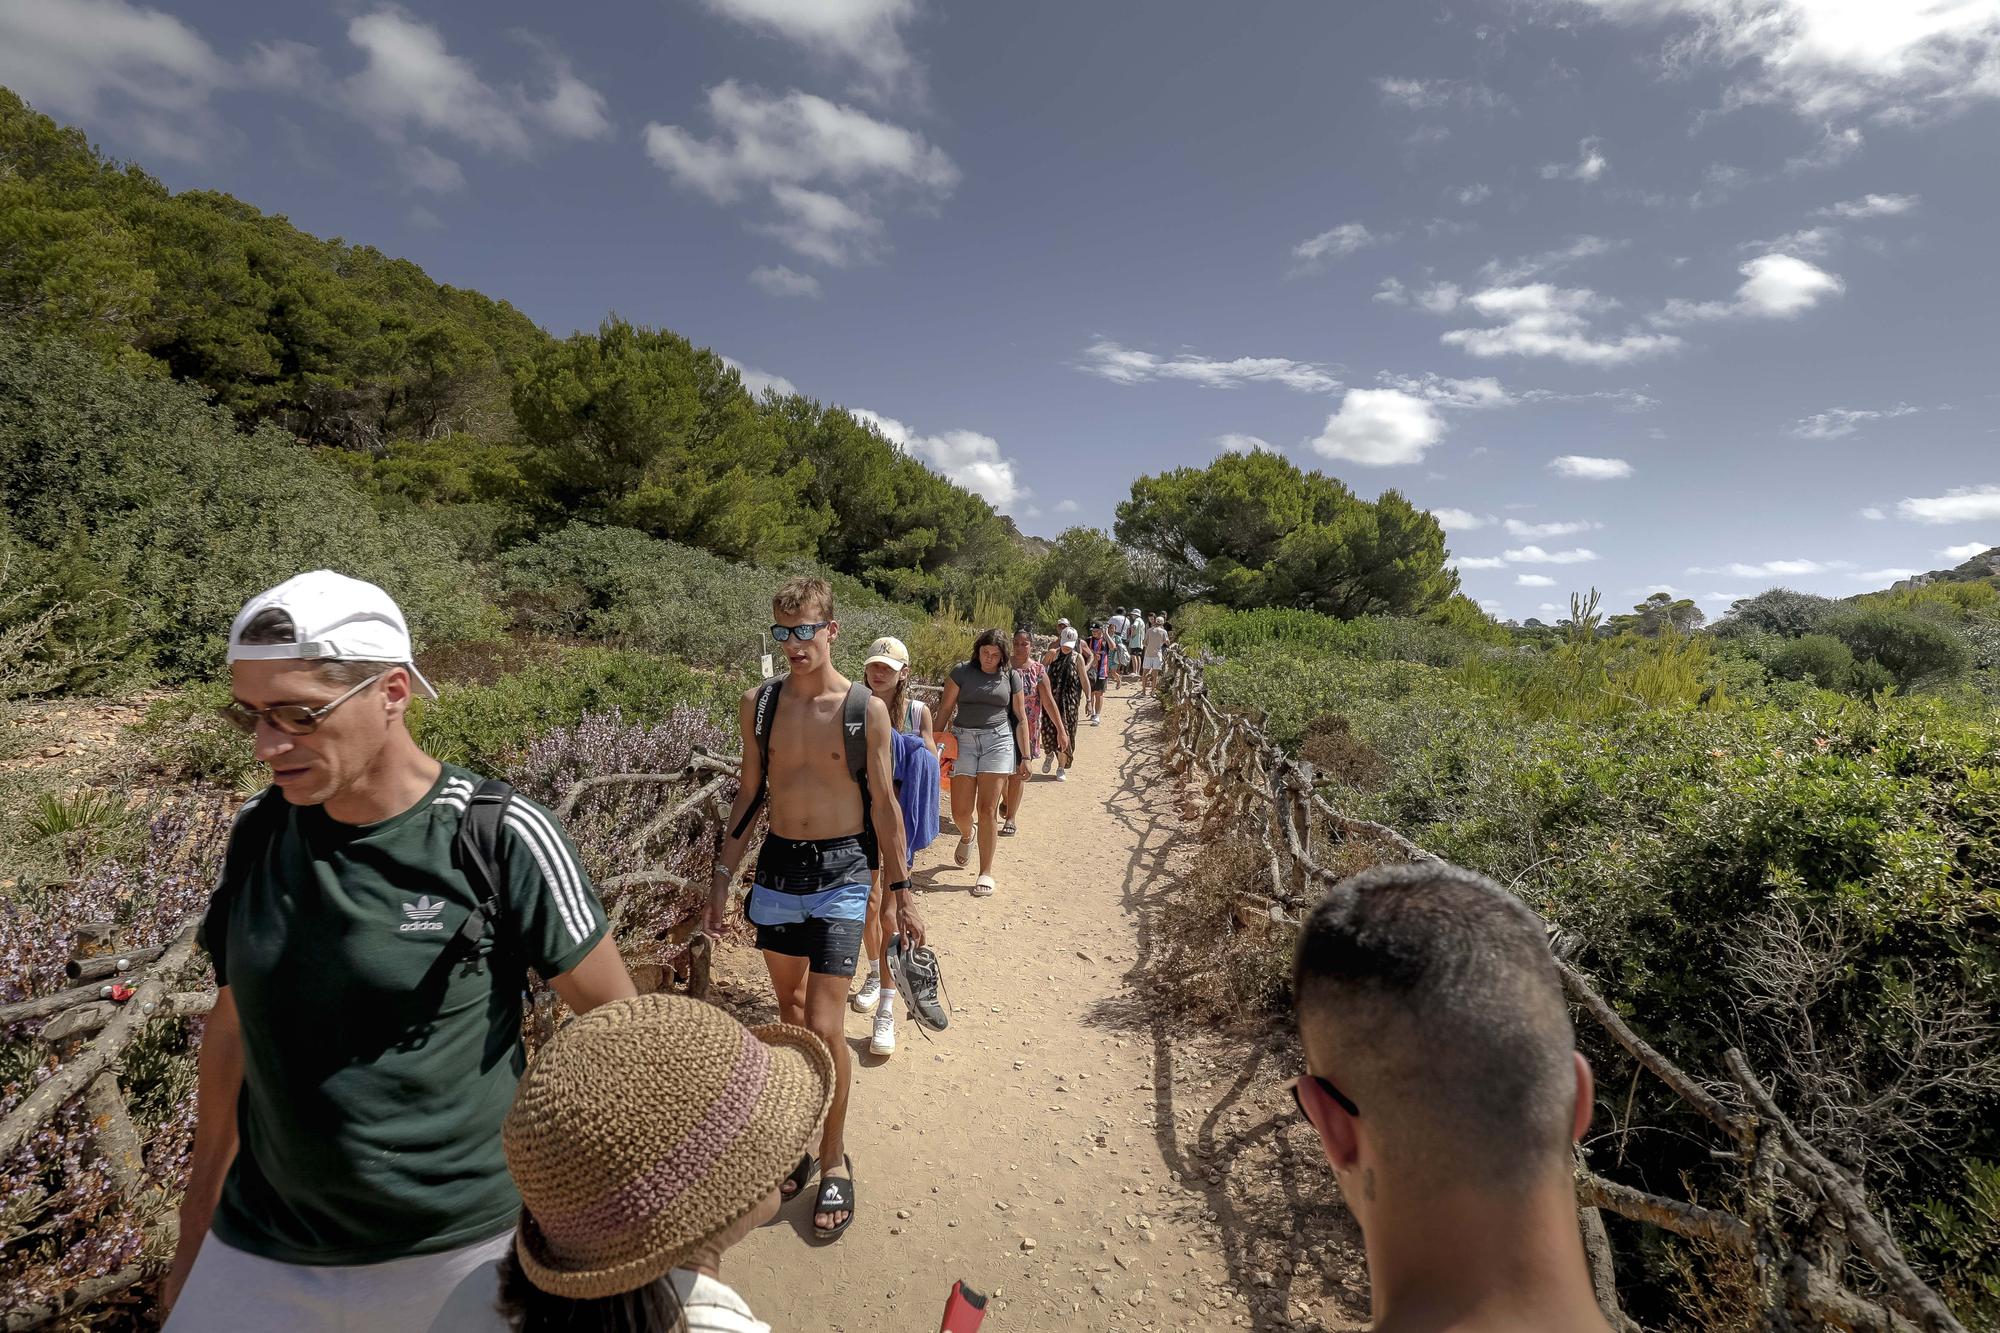 Heillos überlaufen: So geht es in der Instagram-Bucht Caló des Moro auf Mallorca zu